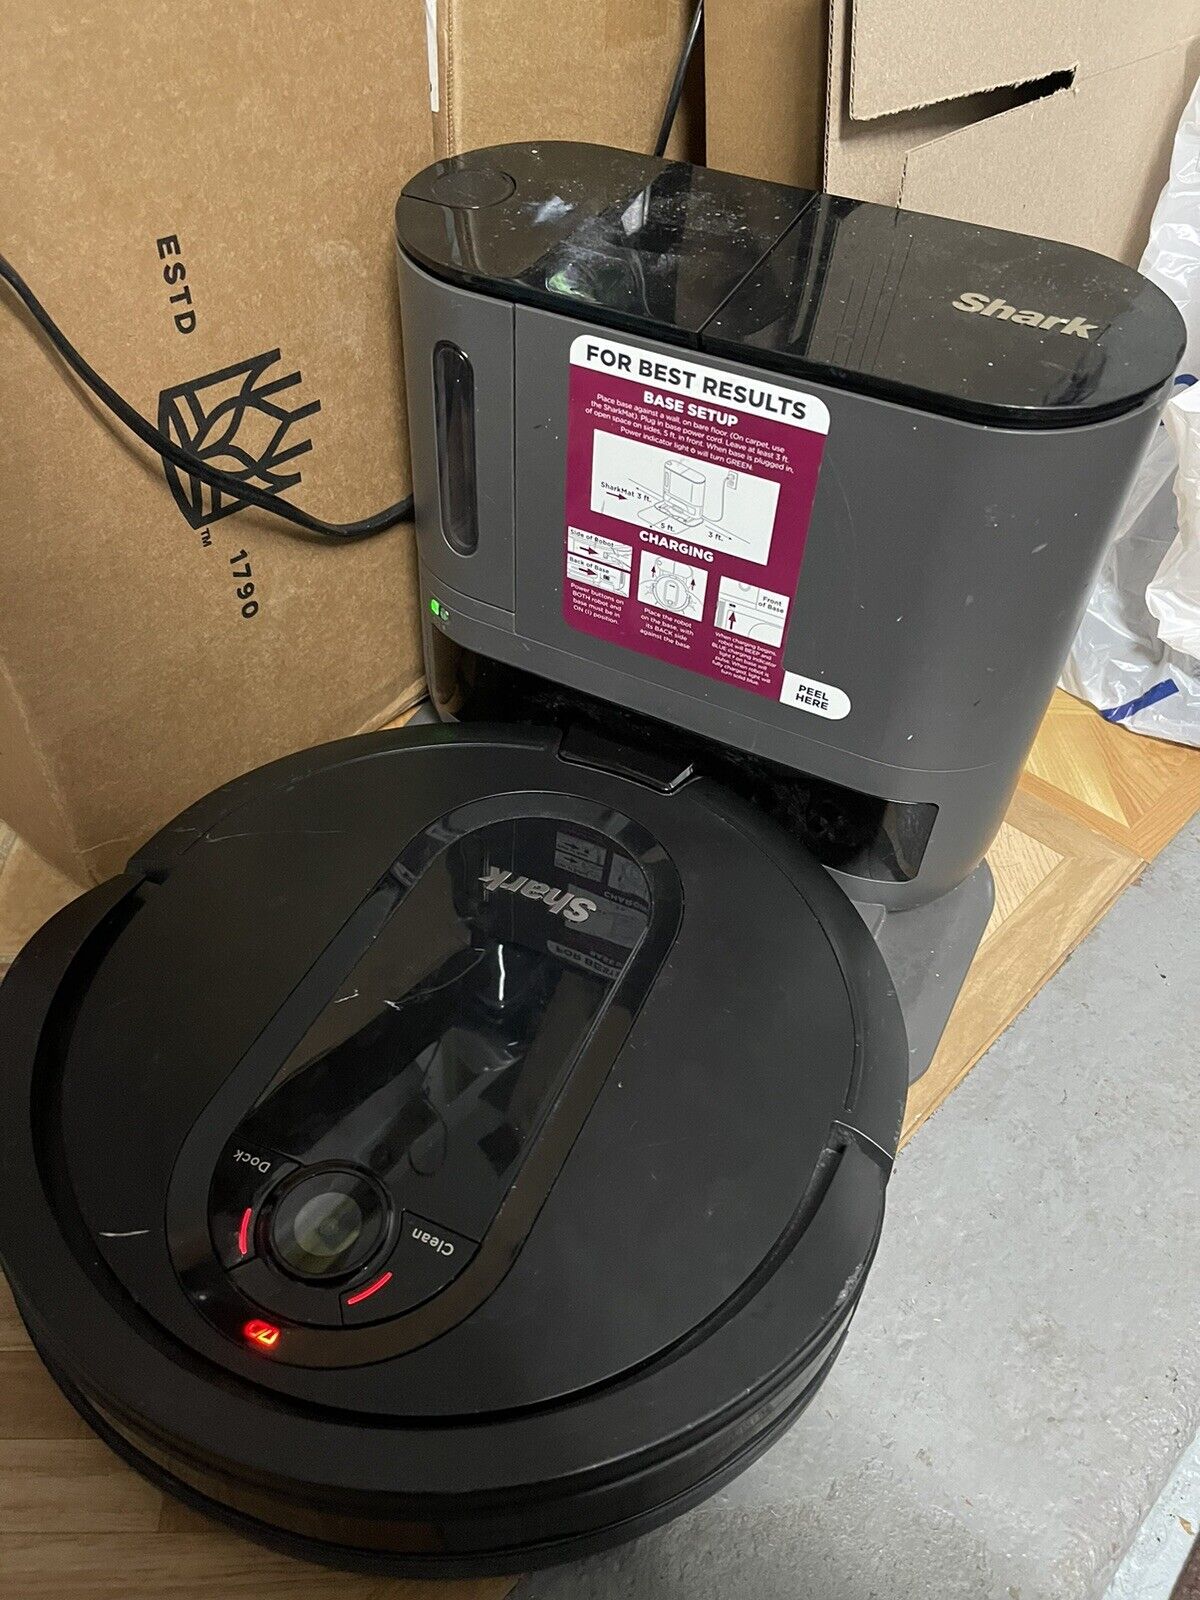 Robot vacuums